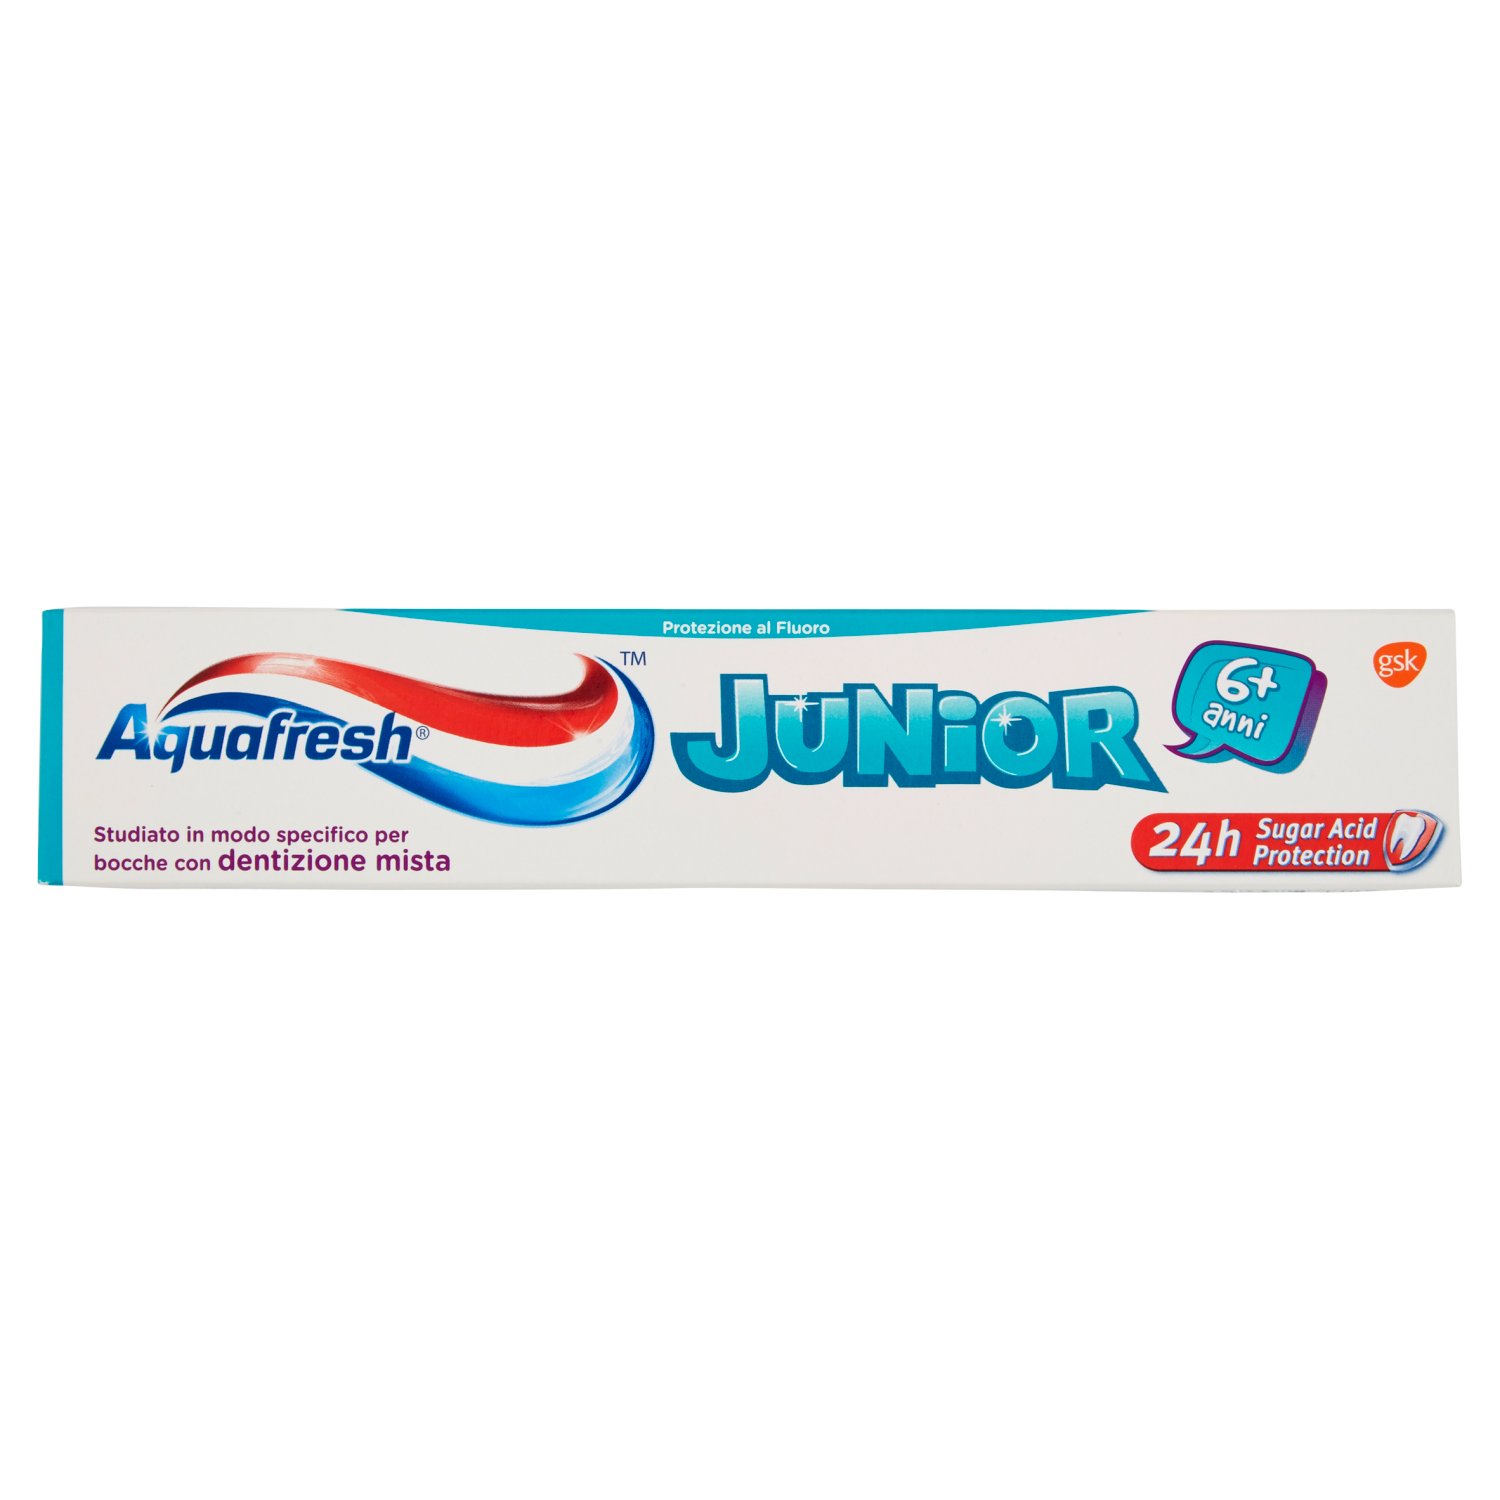 Aquafresh Junior Dentifricio Specifico per Bambini 6-12 anni con Fluoro  Gusto Menta Delicata 75 ml